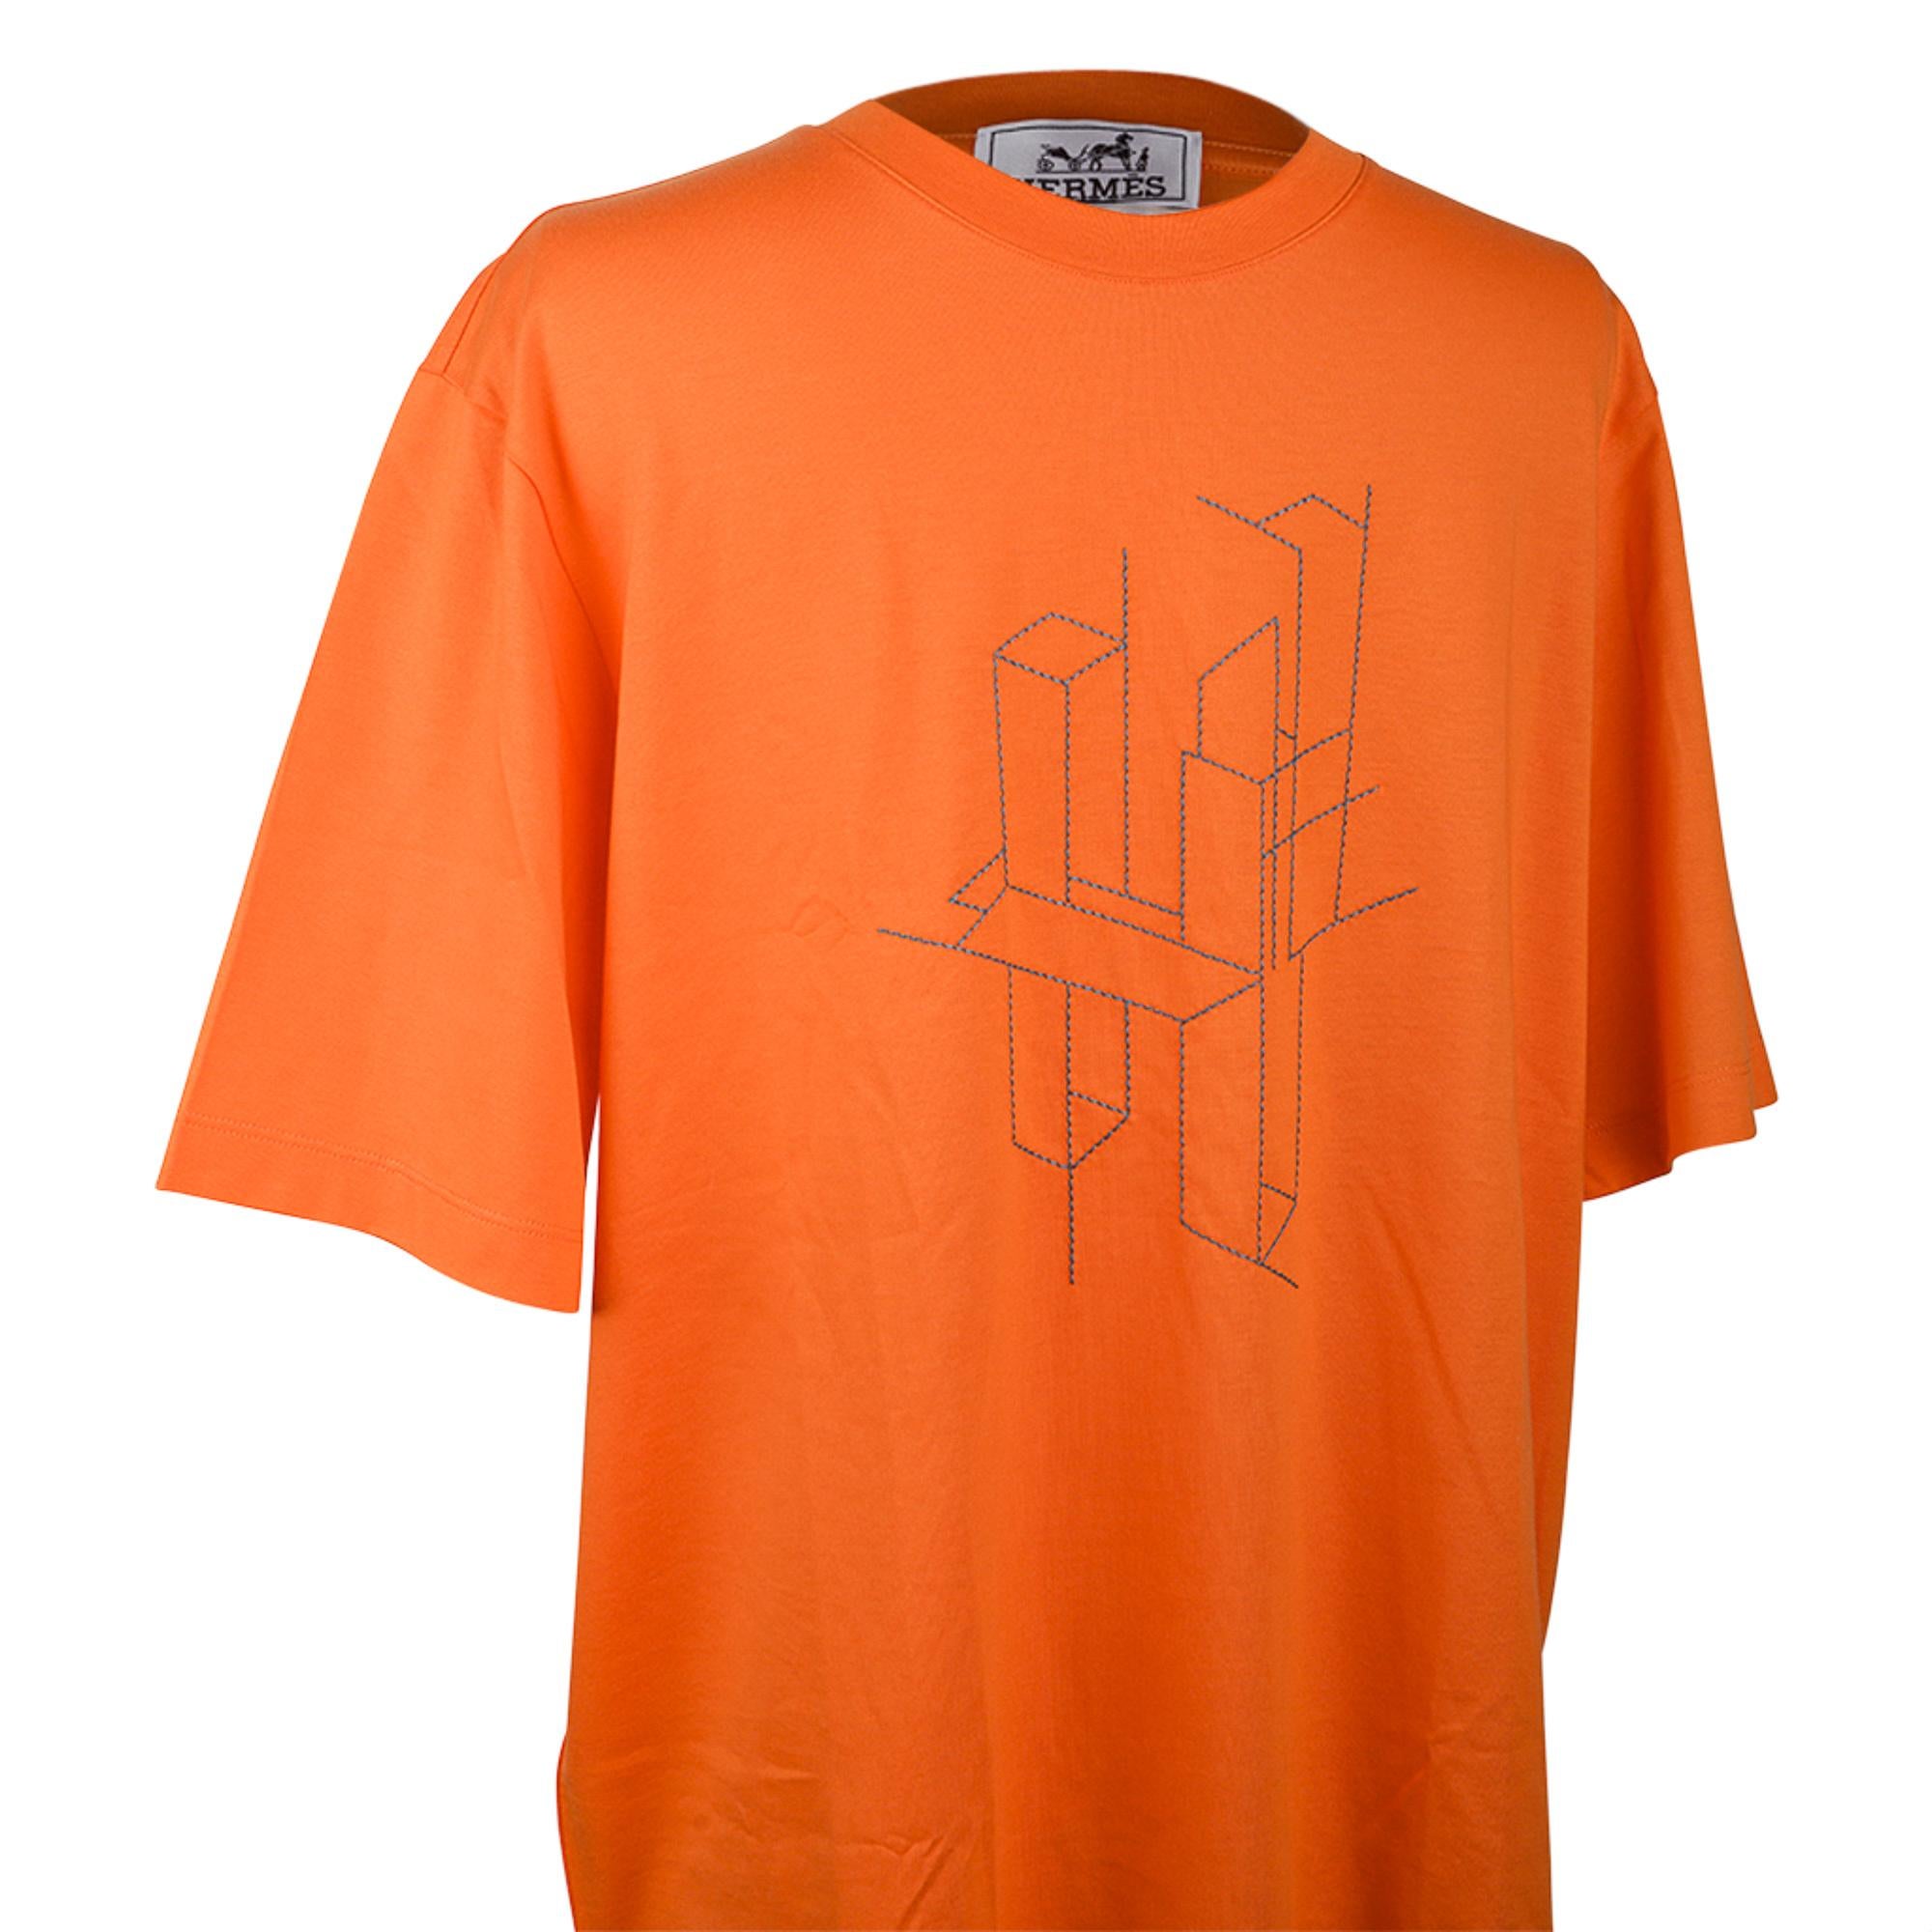 T-Shirt à broderie 3D Hermes H en orange Hermes.
Représentation du H brodé en 3D.
T à manches courtes avec col ras du cou.
Le tissu est en coton.
NEUF ou JAMAIS UTILISÉ.
vente finale

TAILLE M

MESURES SUPÉRIEURES :
LENGTH 28.5